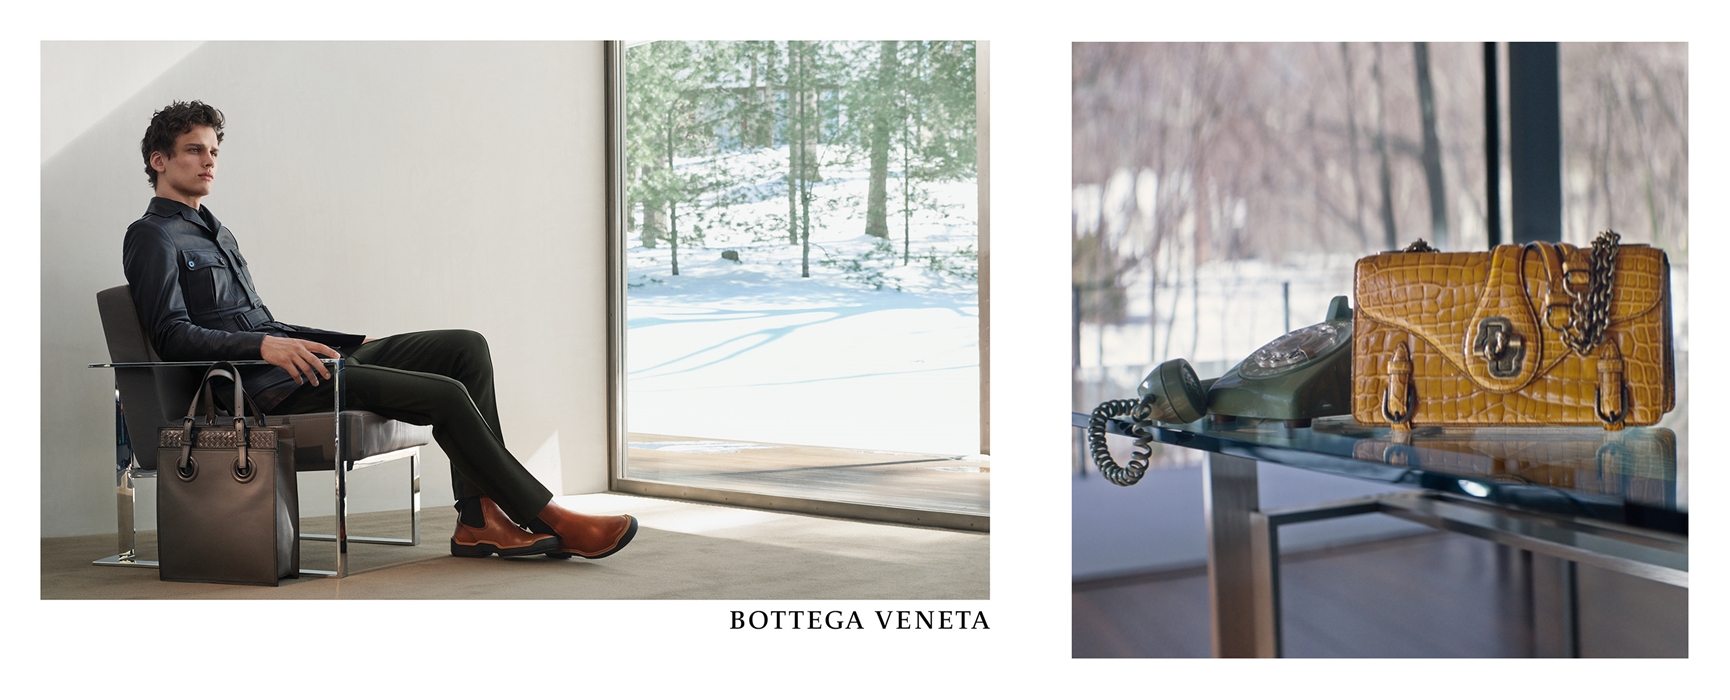 Alberto Burri's Land Art Masterpiece Grand Cretto Stars in Bottega Veneta's  Fall Ad Campaign